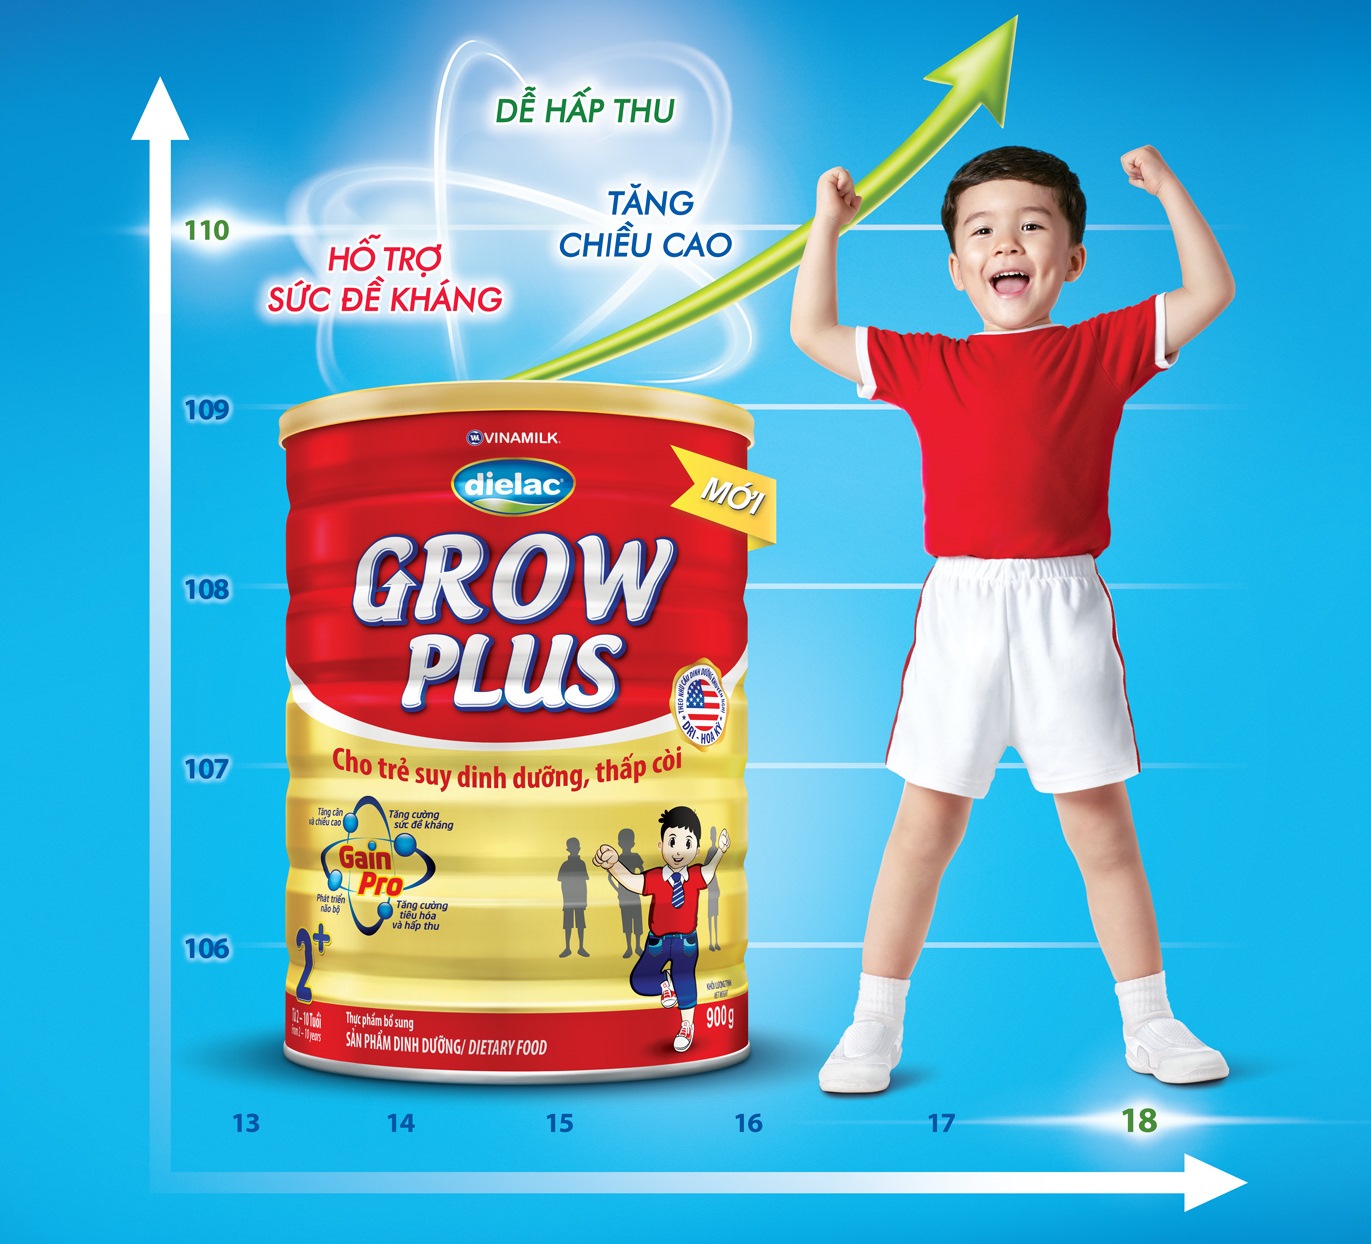 Dielac Grow Plus với 4 lợi ích nổi trội “đặc chế” cho trẻ suy dinh dưỡng thấp còi,  giúp trẻ bắt kịp đà tăng trưởng